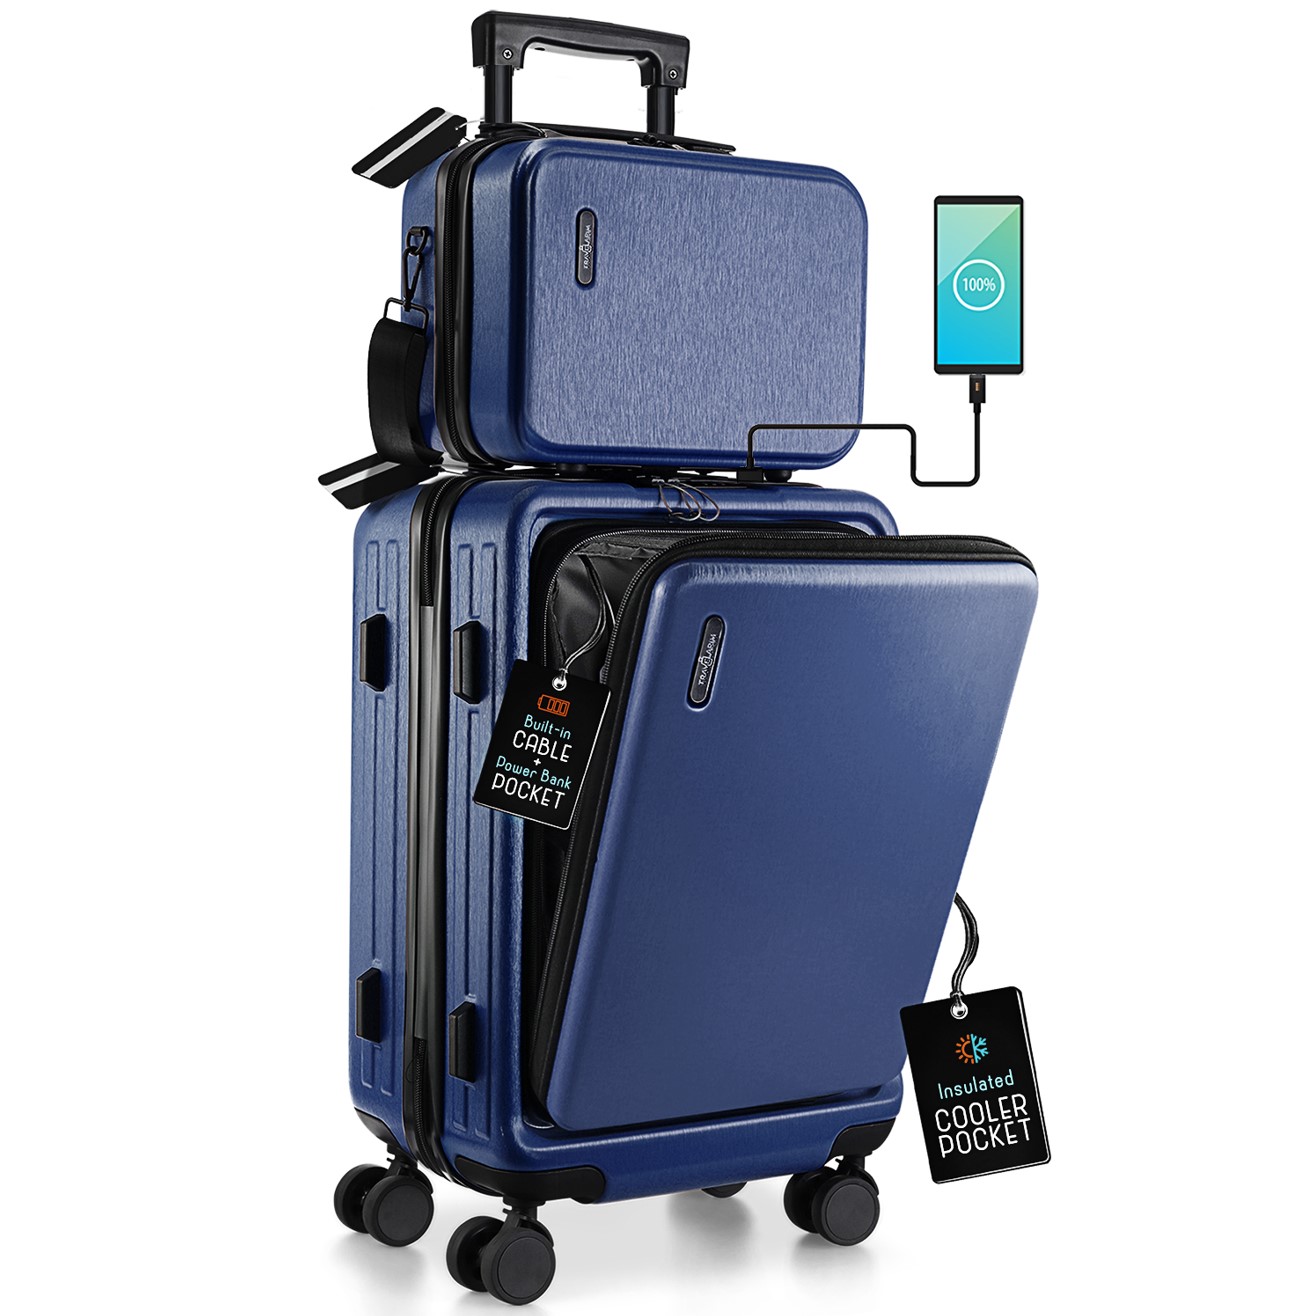 StorageBud 20 inch Hardside Carry-On Expandable Luggage, Front Pocket Luggage Set Spinner Suitcase Set, Navy Blue - image 1 of 10